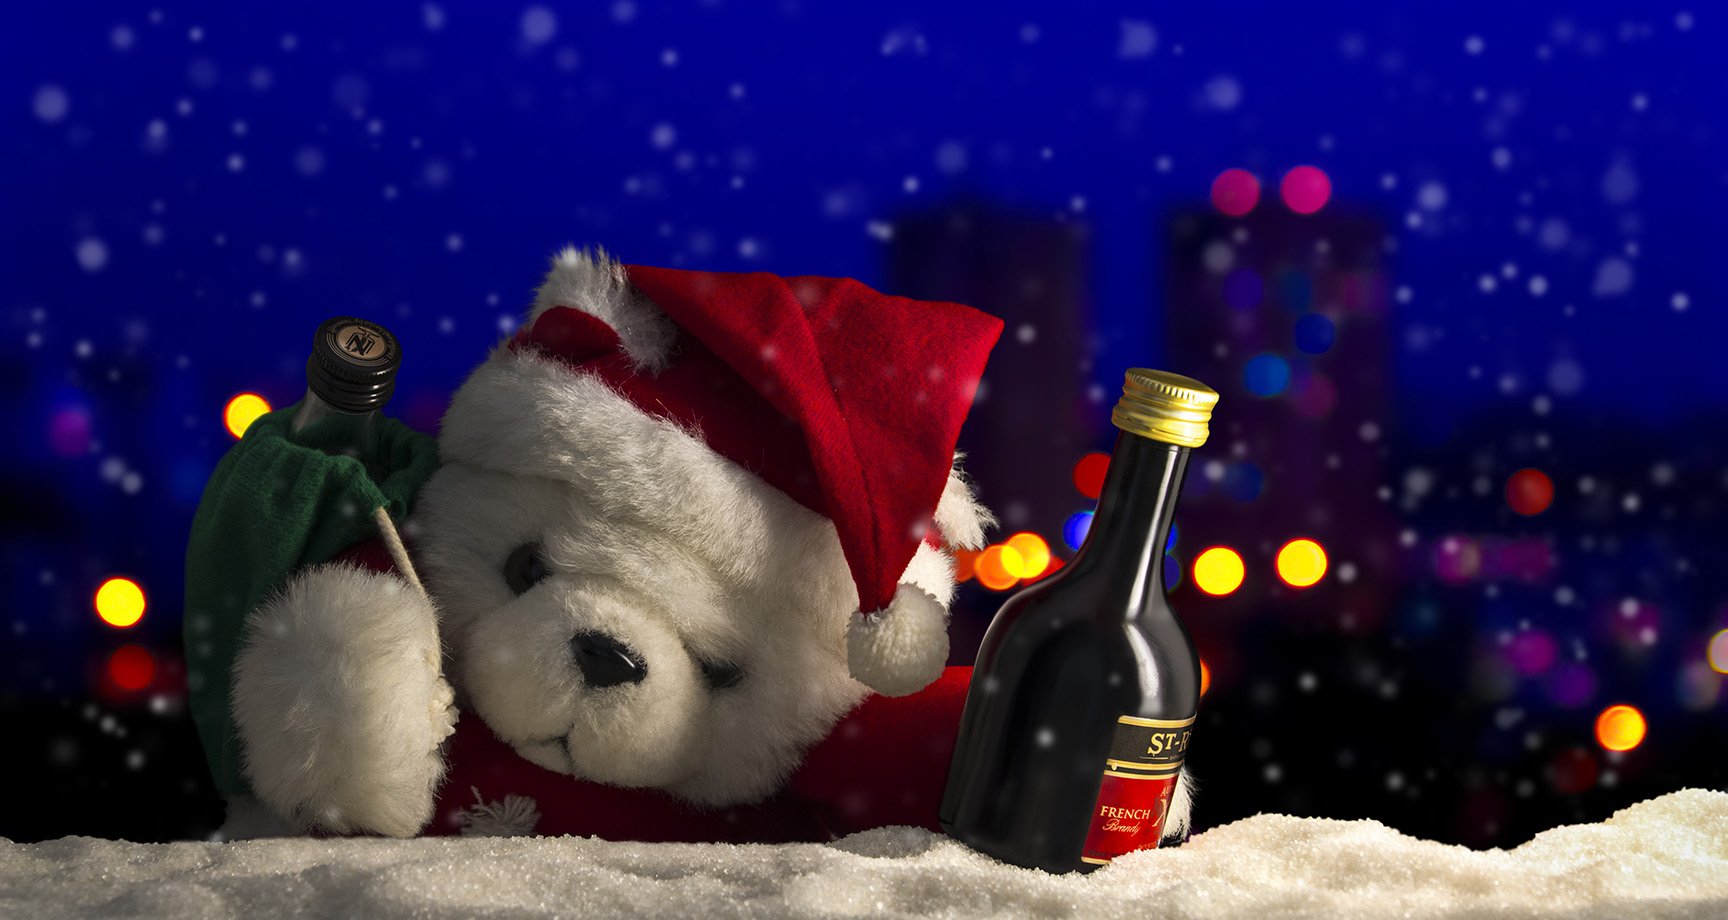 Мишка, Дед Мороз, Новый год, зима, снег, огни, мороз, алкоголь, Фото Брест